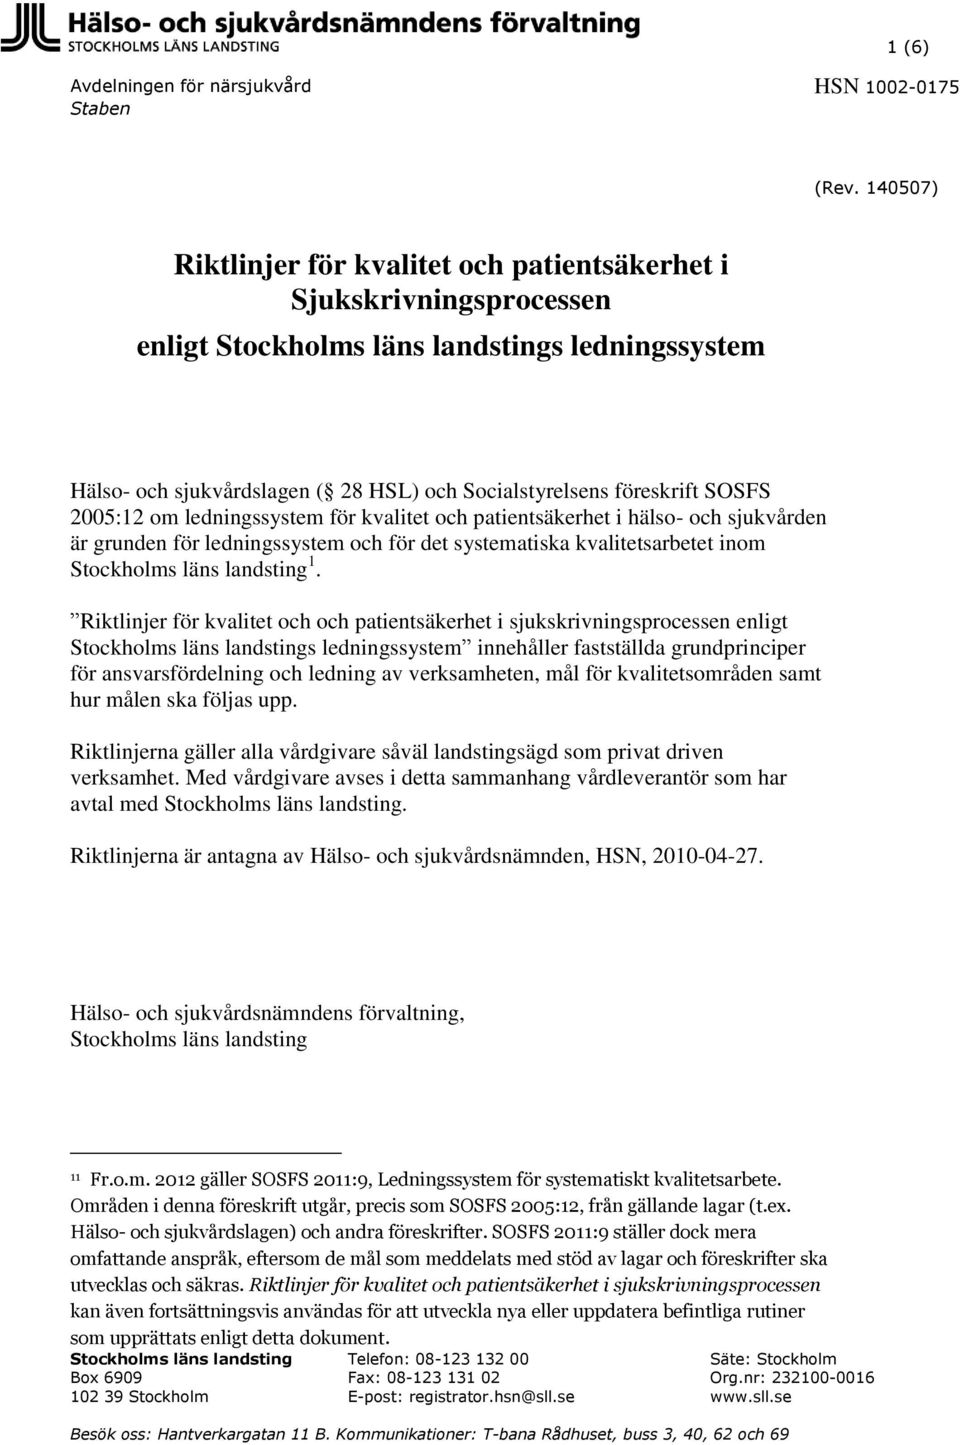 SOSFS 2005:12 om ledningssystem för kvalitet och patientsäkerhet i hälso- och sjukvården är grunden för ledningssystem och för det systematiska kvalitetsarbetet inom Stockholms läns landsting 1.